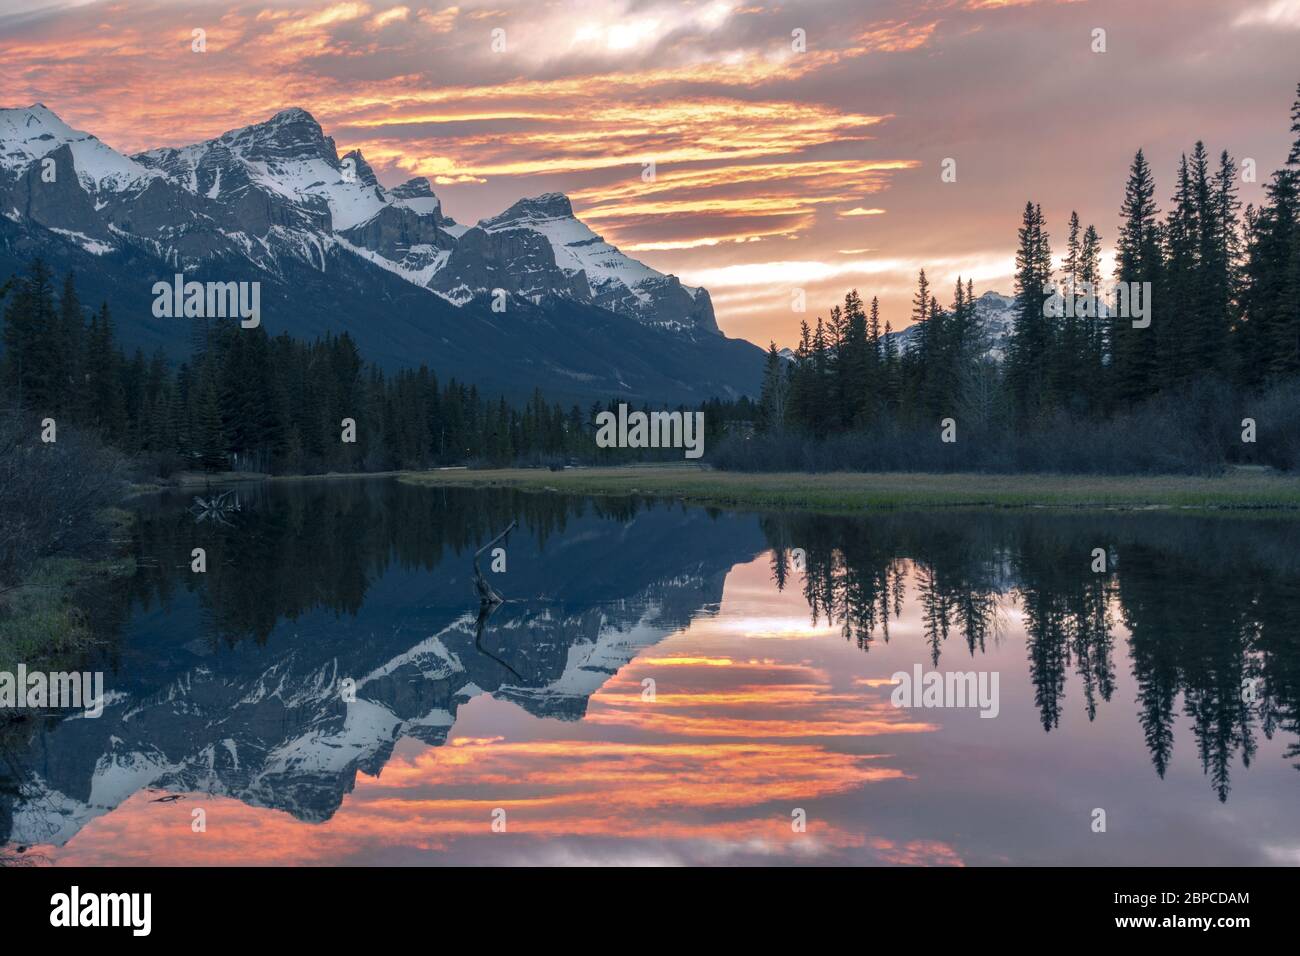 Szenischer Sonnenuntergang Abendfarben Canmore Spring Creek Mountain Village und entfernte verschneite Rocky Mountain Peaks Landschaft, Frühfrühling, Alberta Kanada Stockfoto